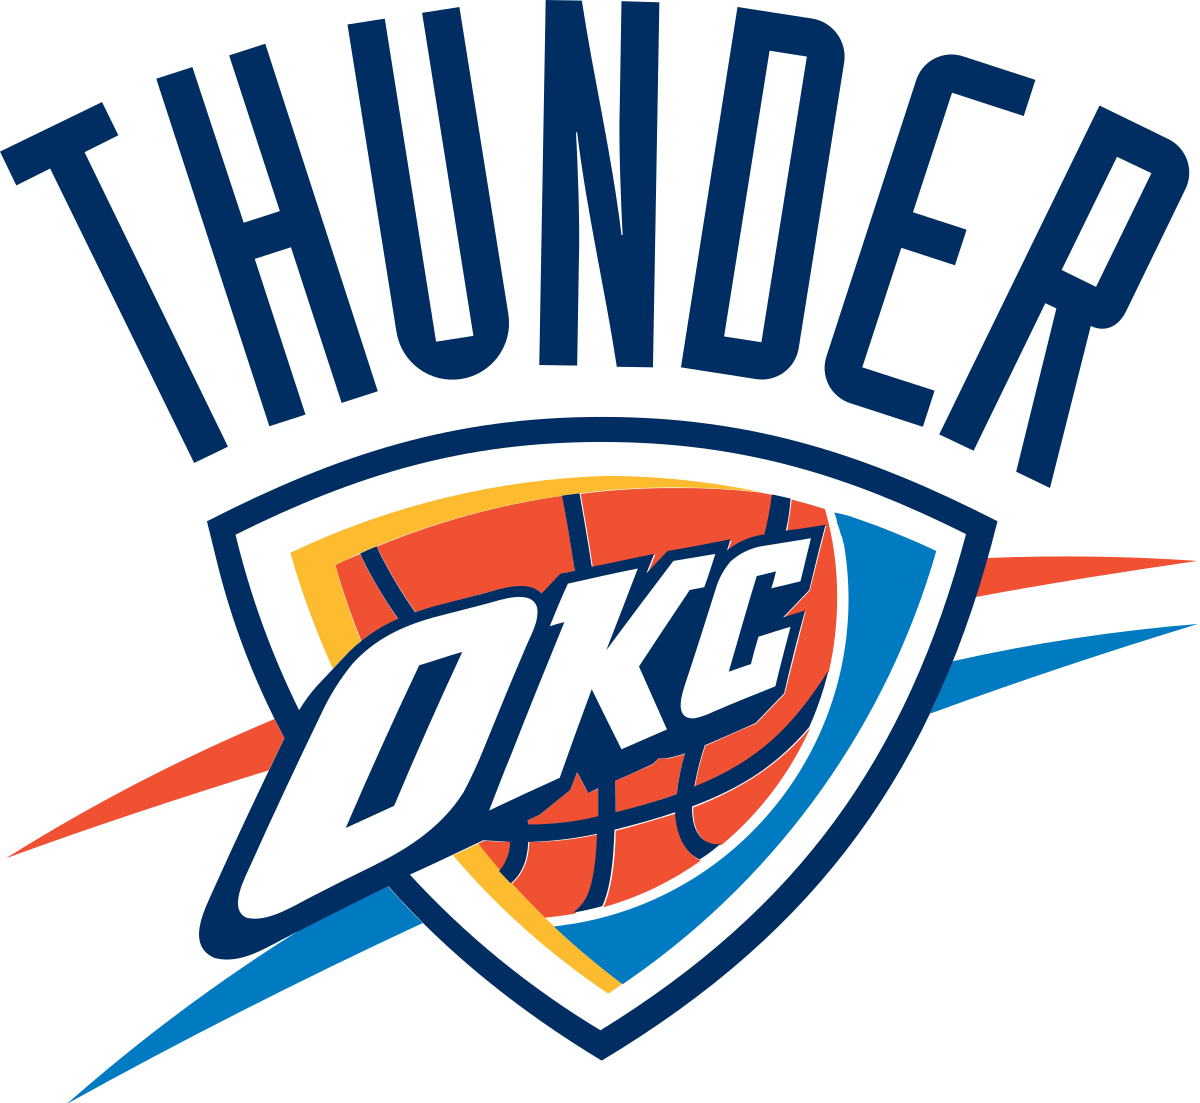 Oklahoma City Thunder - Wikipedia